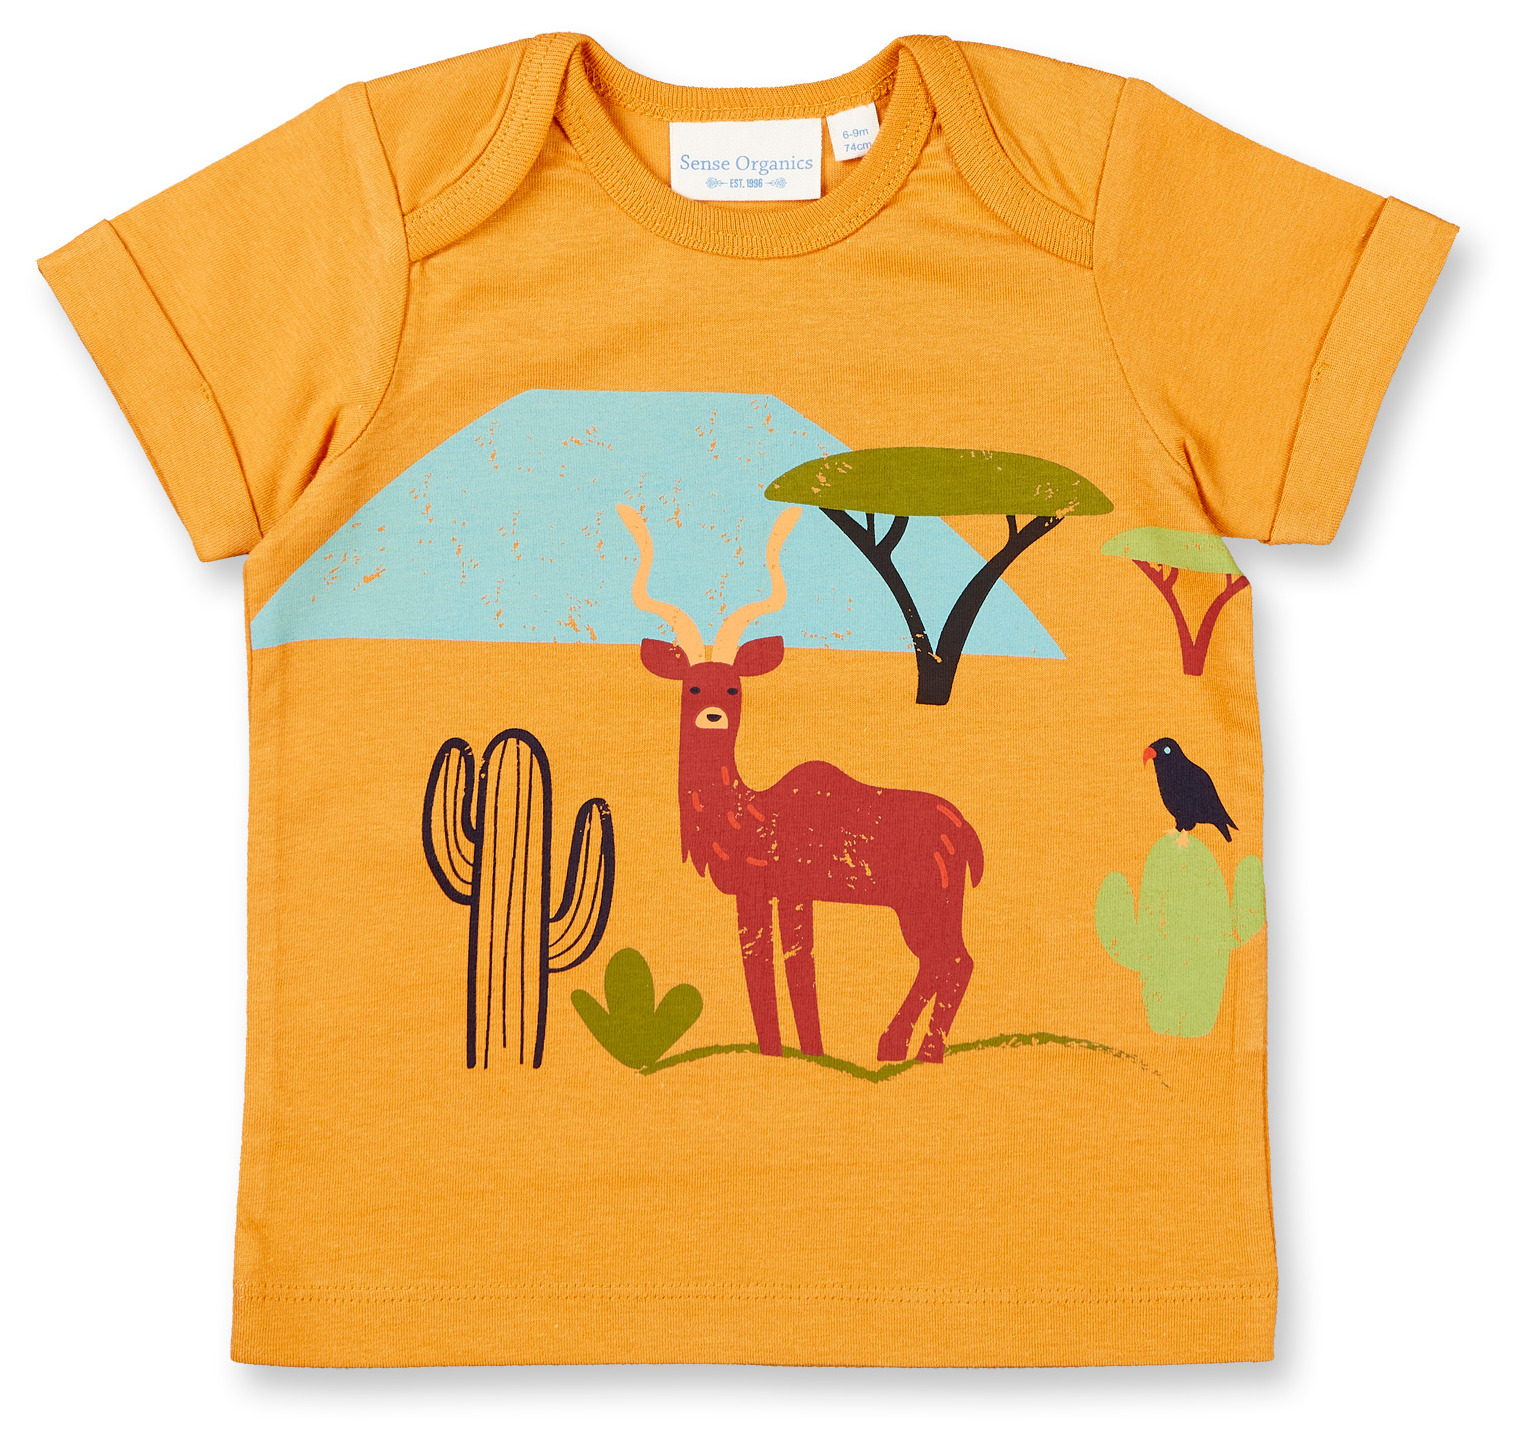 Sense Organic Baby Shirt Kurz Curry Desert Scene